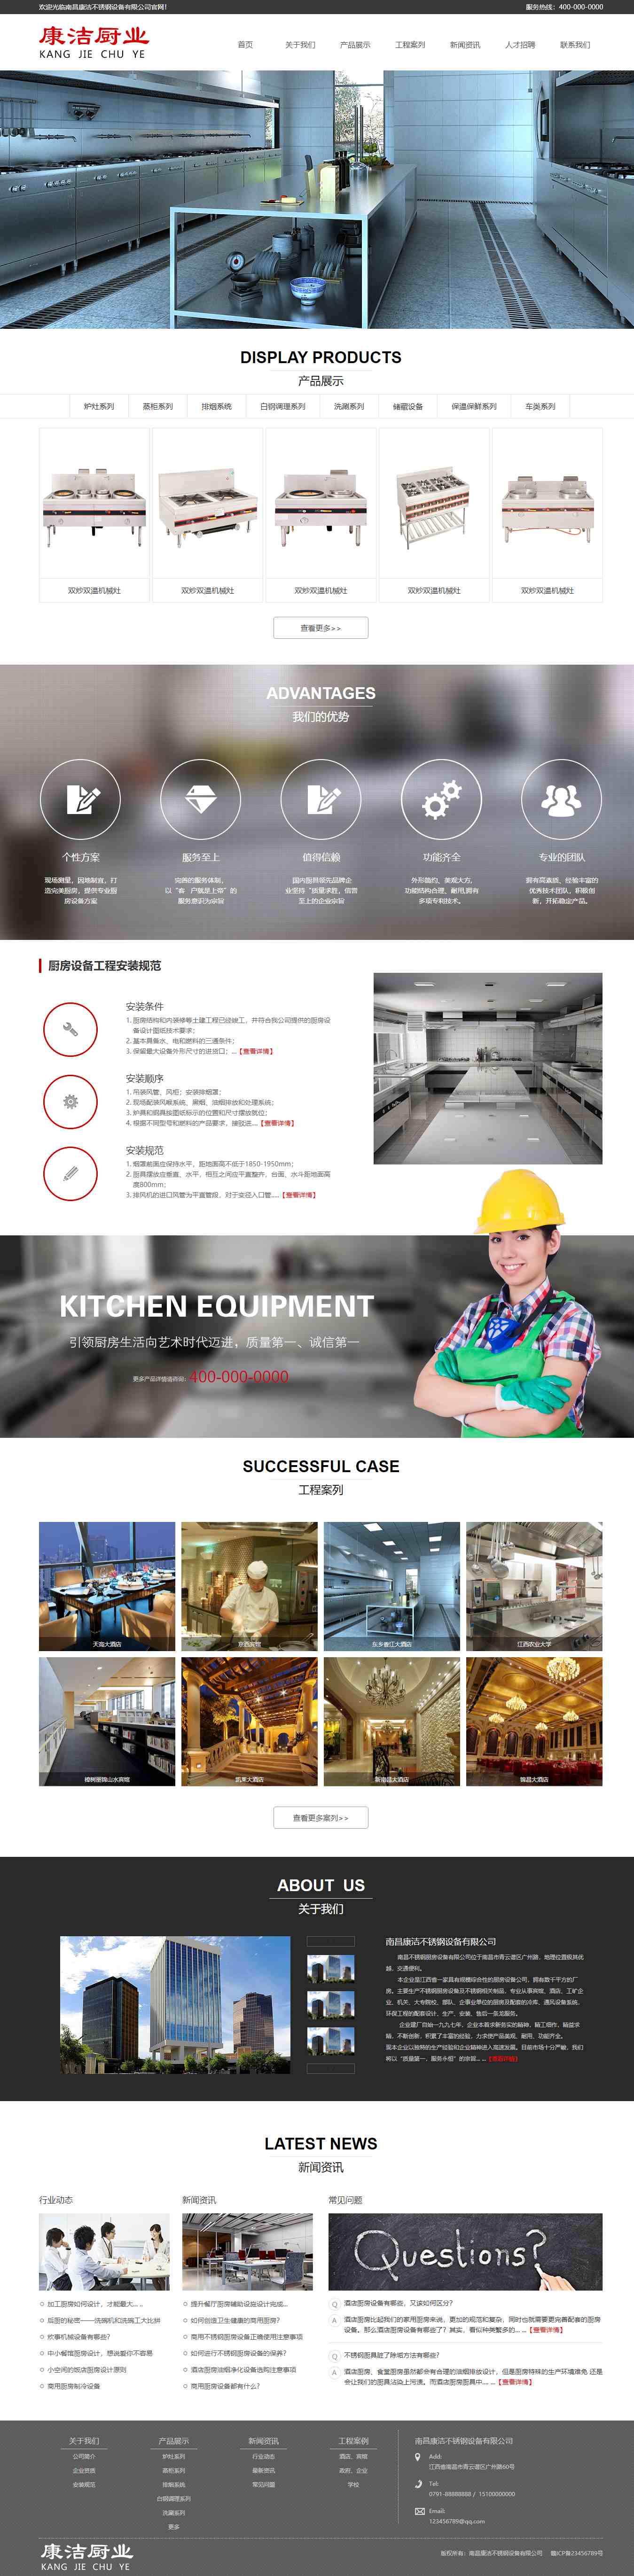 红色简洁风格的厨房厨卫设备企业网站源码下载